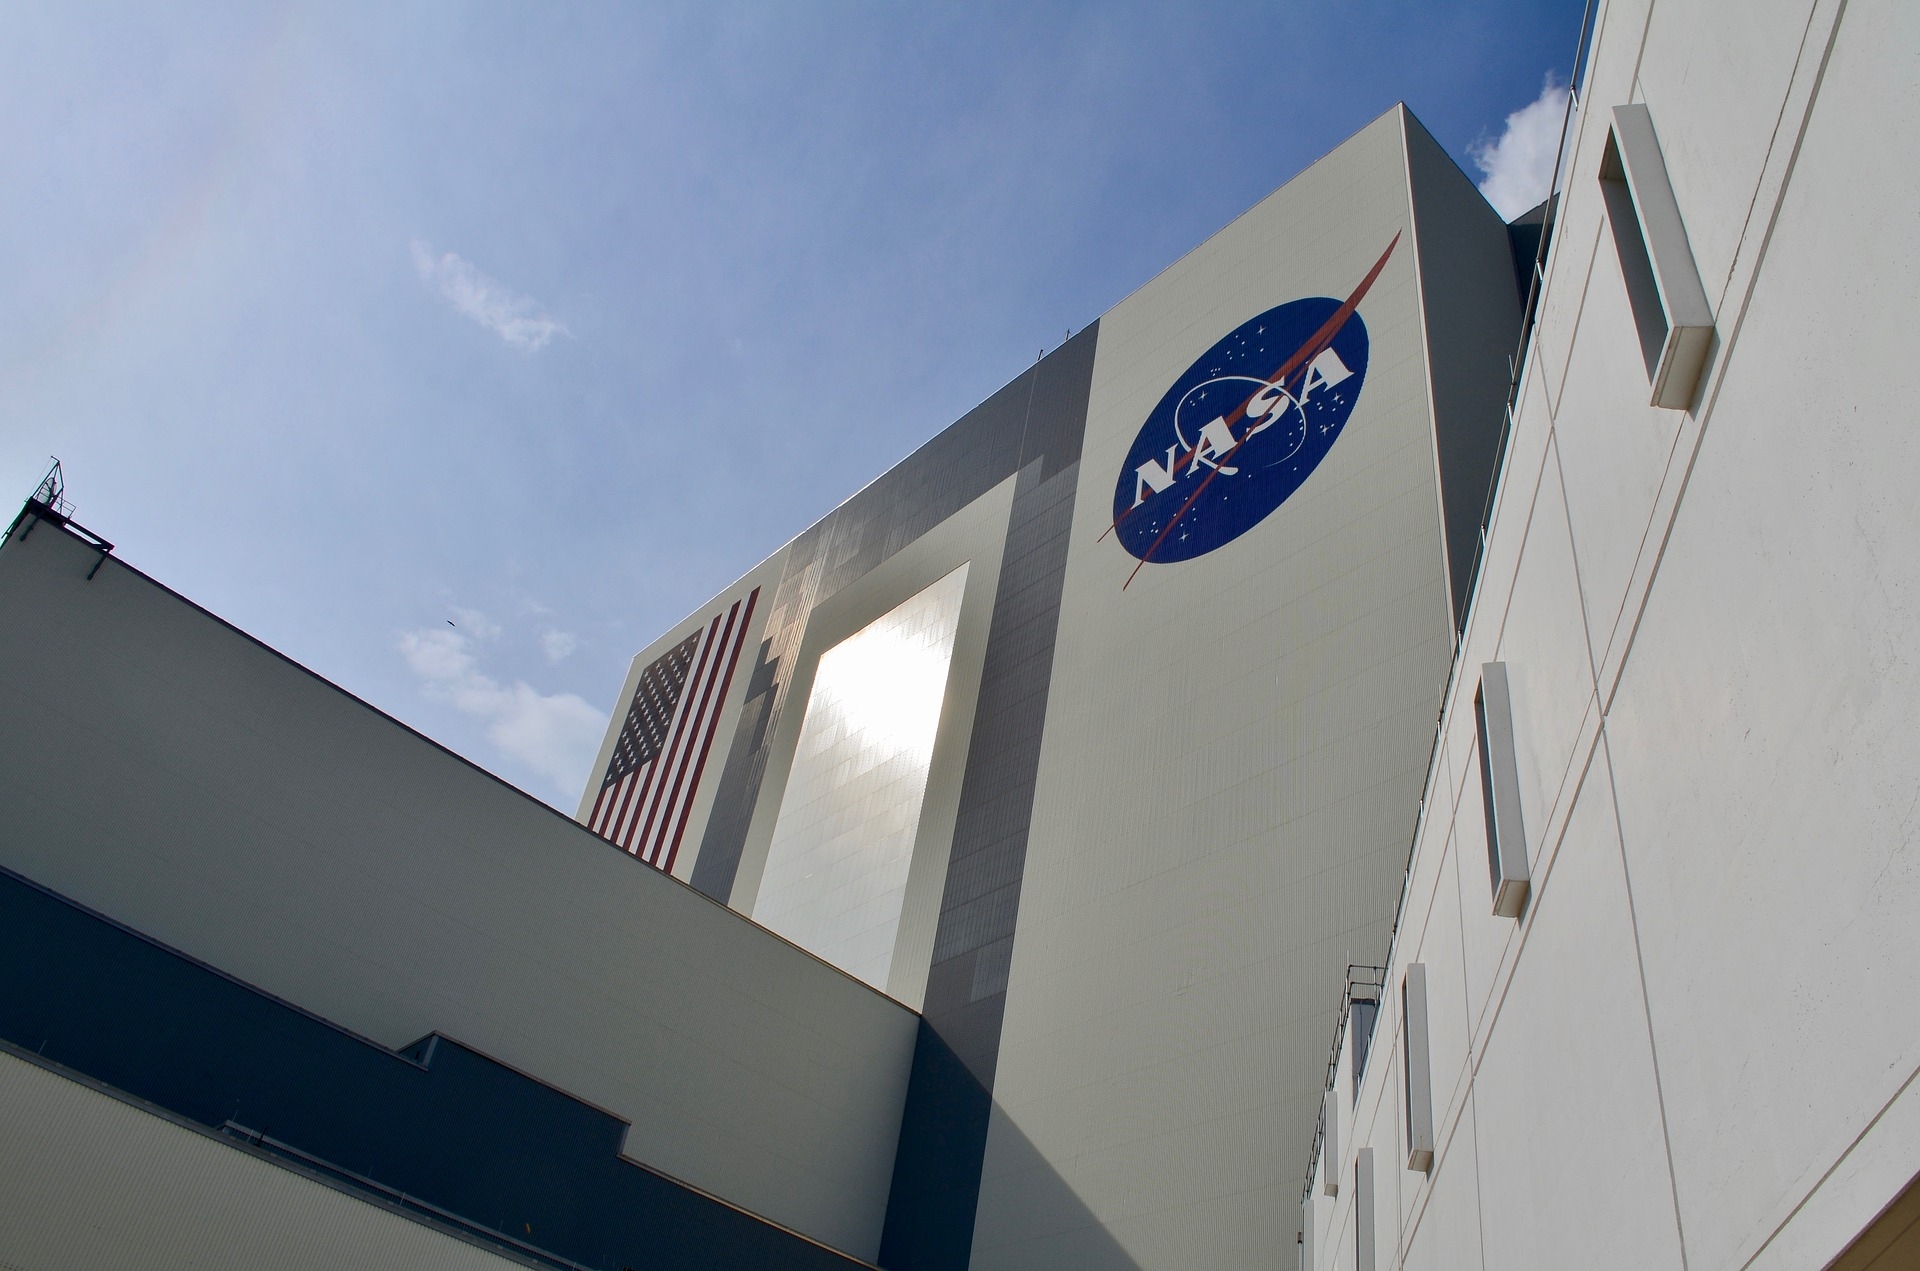 NASA showcases